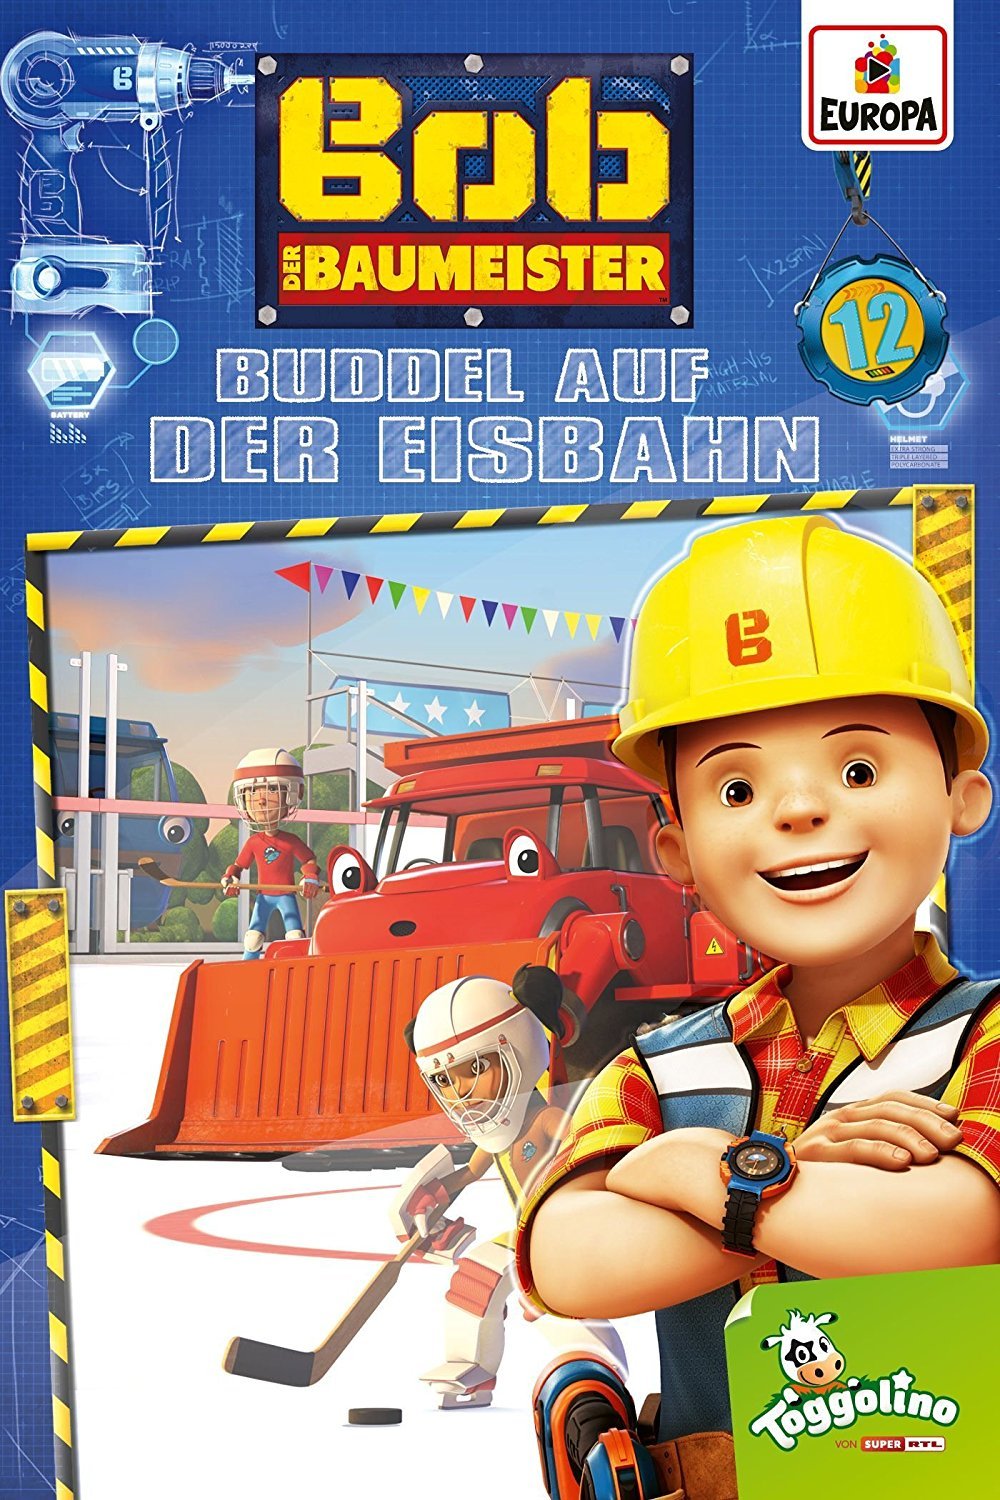 Image of Bob der Baumeister - Buddel auf der Eisbahn (Folge 12)